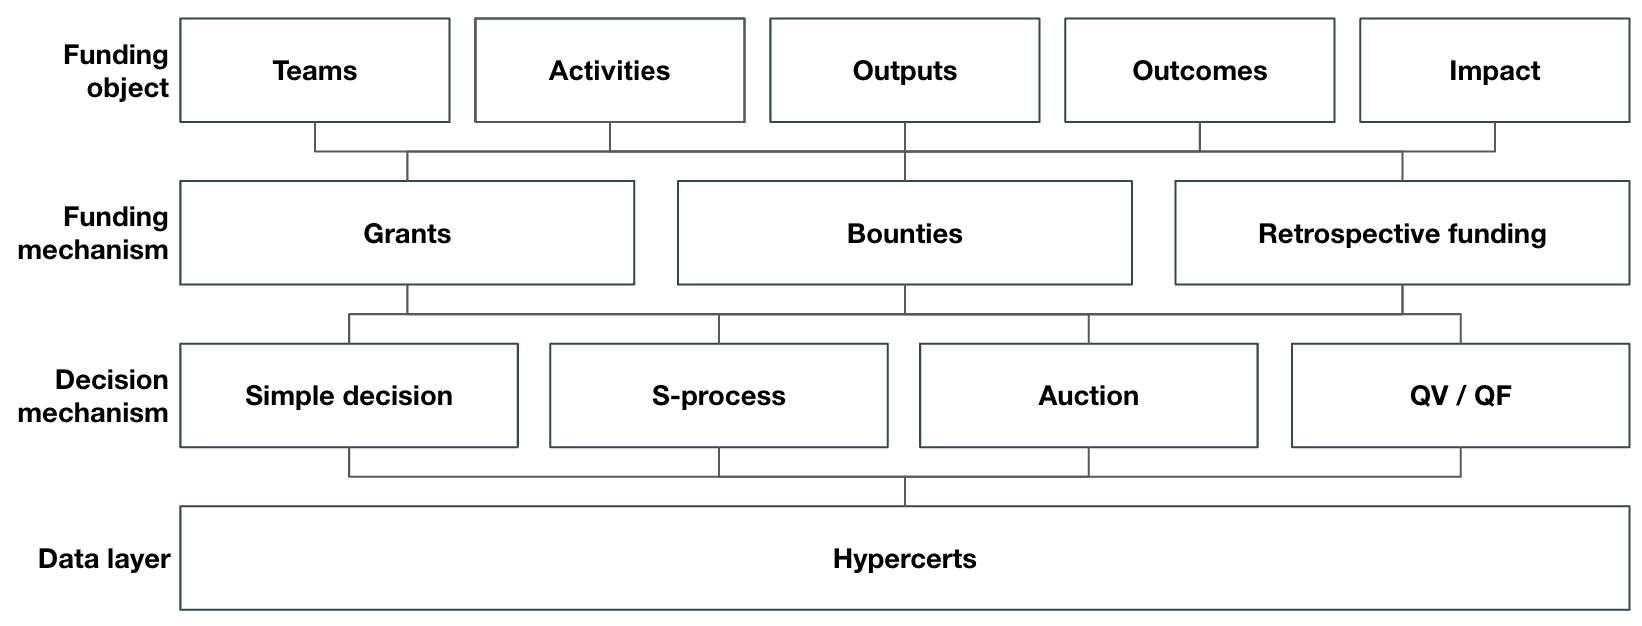 Hypercerts as a data layer for an IFS